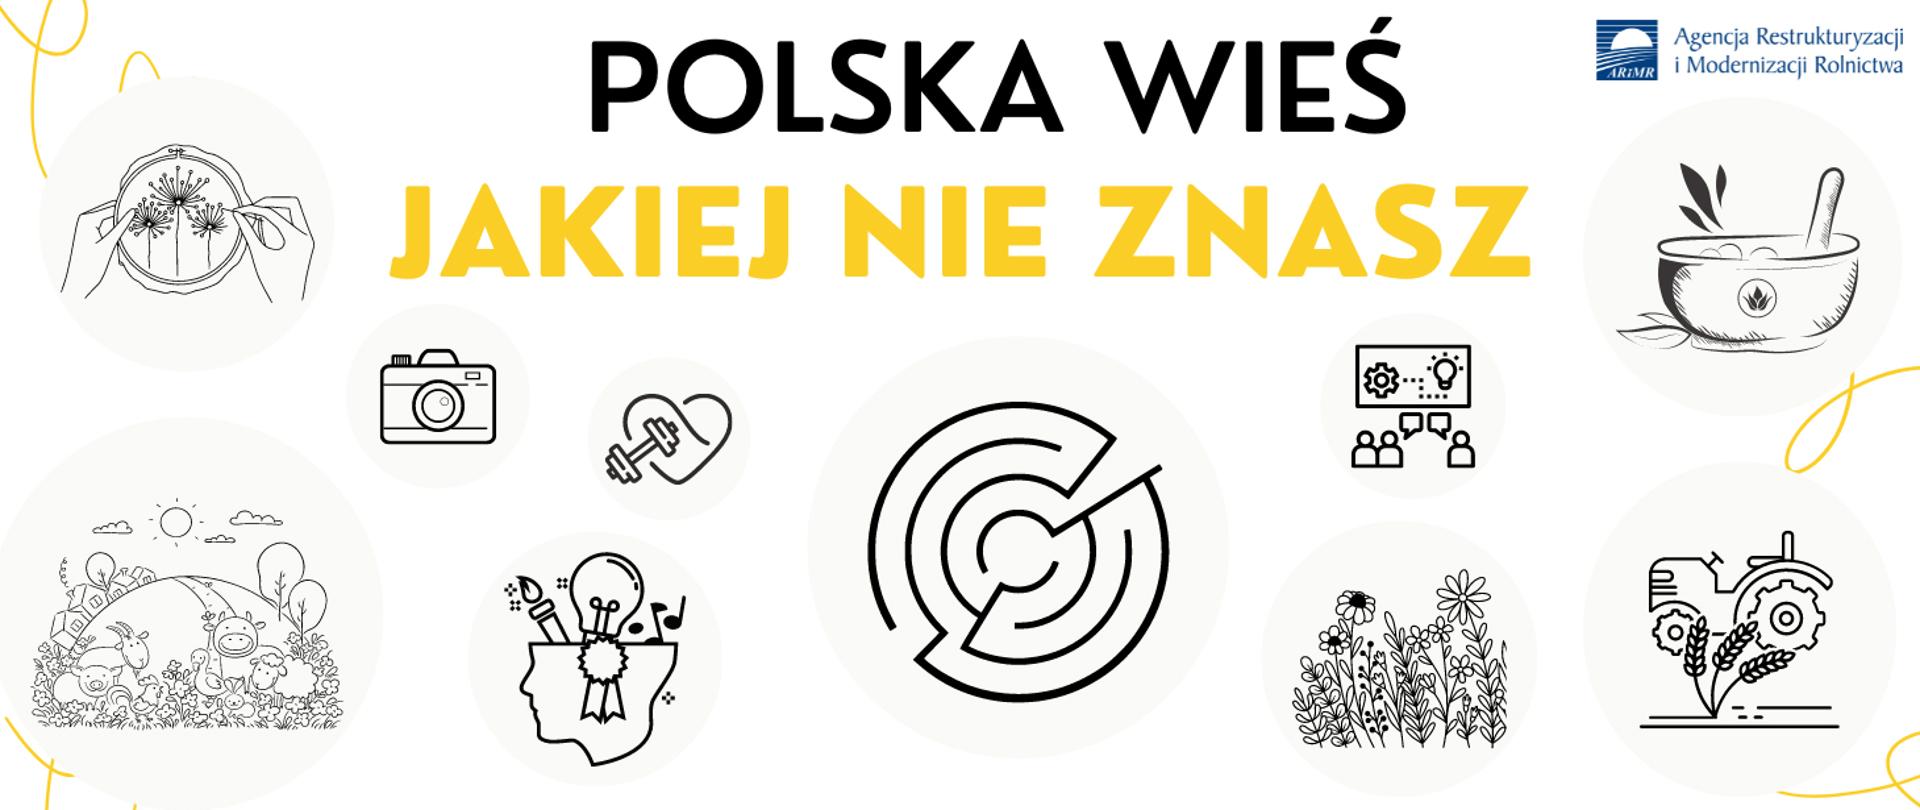 Polska_wieś_jakiej_nie_znasz